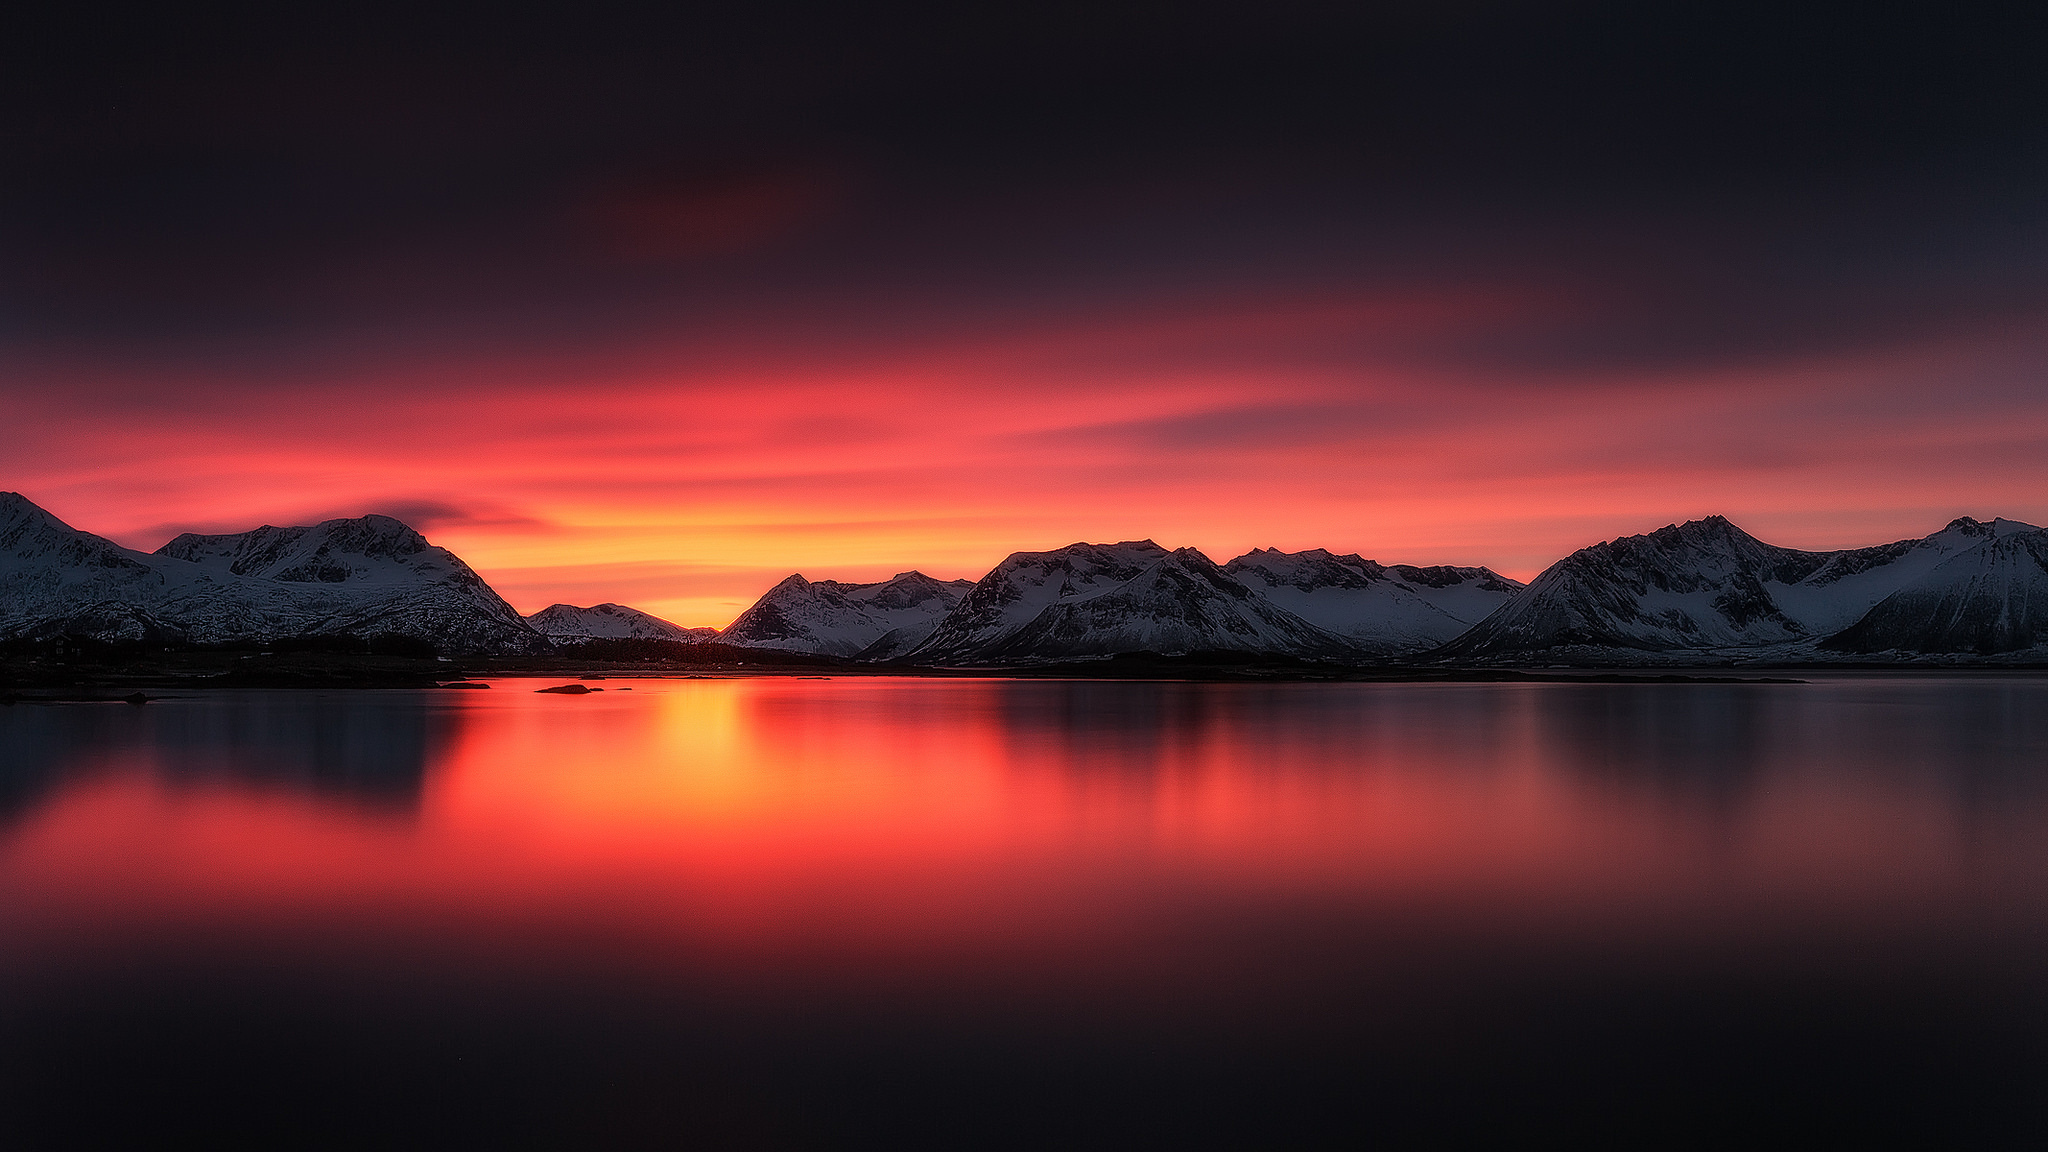 Фотография размером 1024 2048. Горы. Природа. Горы озеро закат. Горы и небо красное.